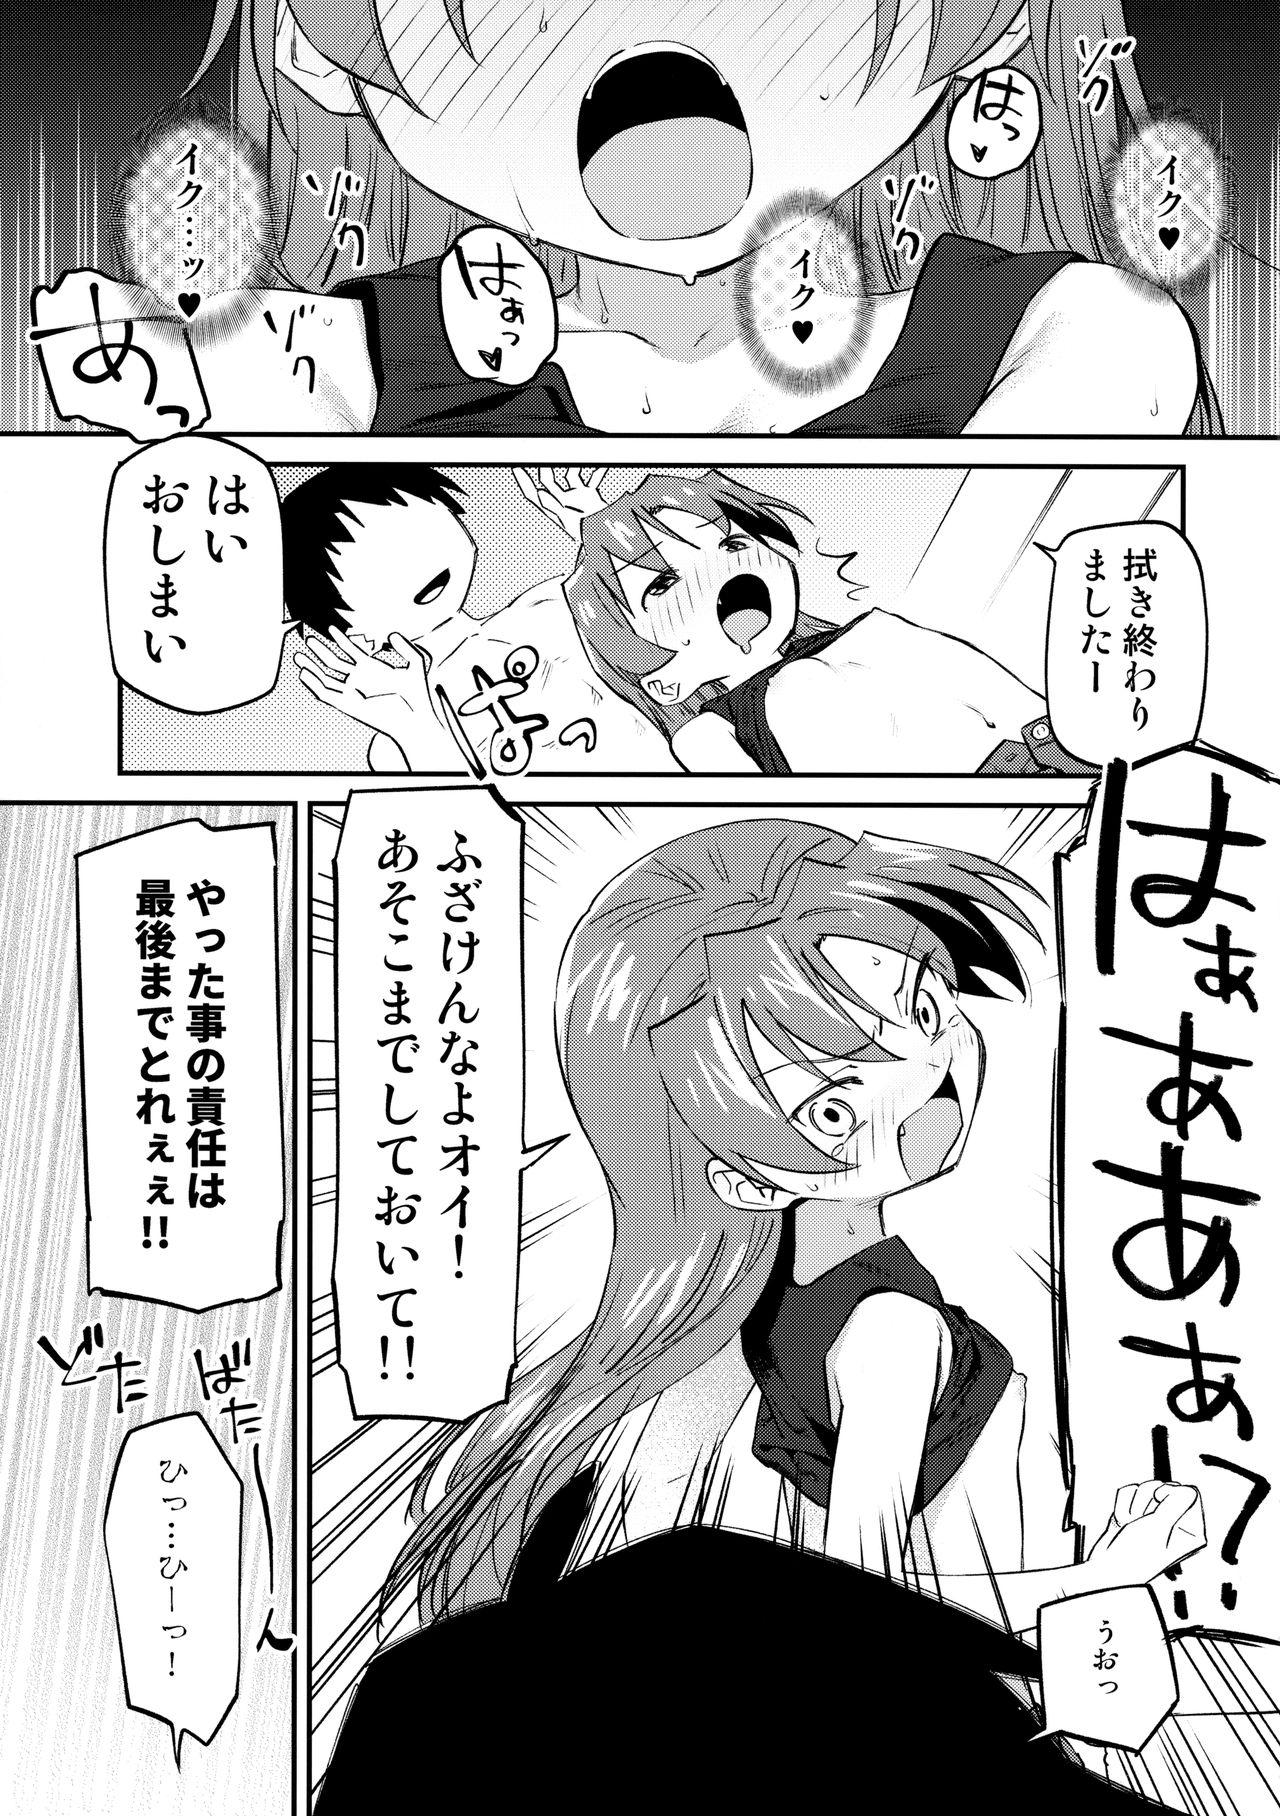 Perfect Butt Kyouko to Are Suru Hon 3 - Puella magi madoka magica Passion - Page 10